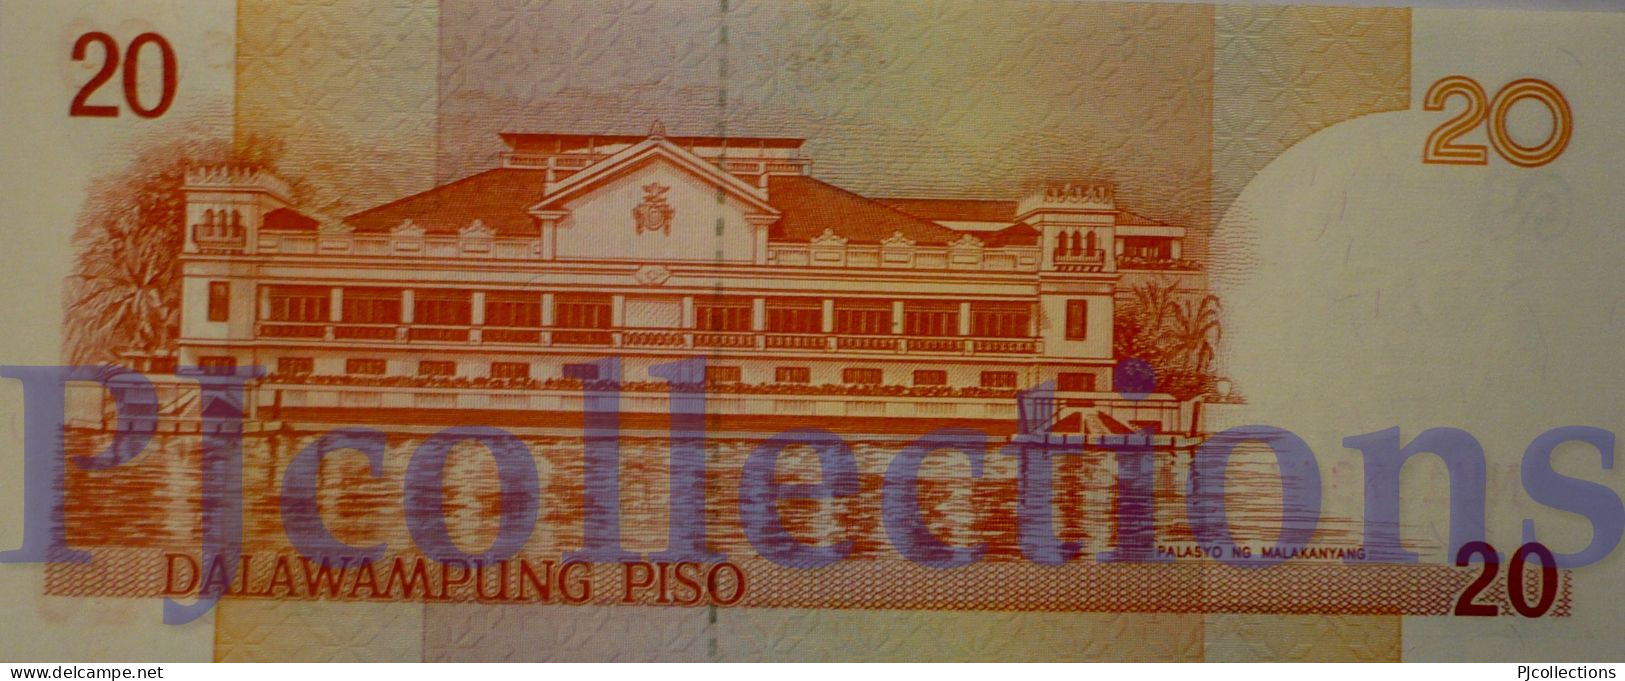 PHILIPPINES 20 PISO 1997 PICK 182a UNC - Filippine